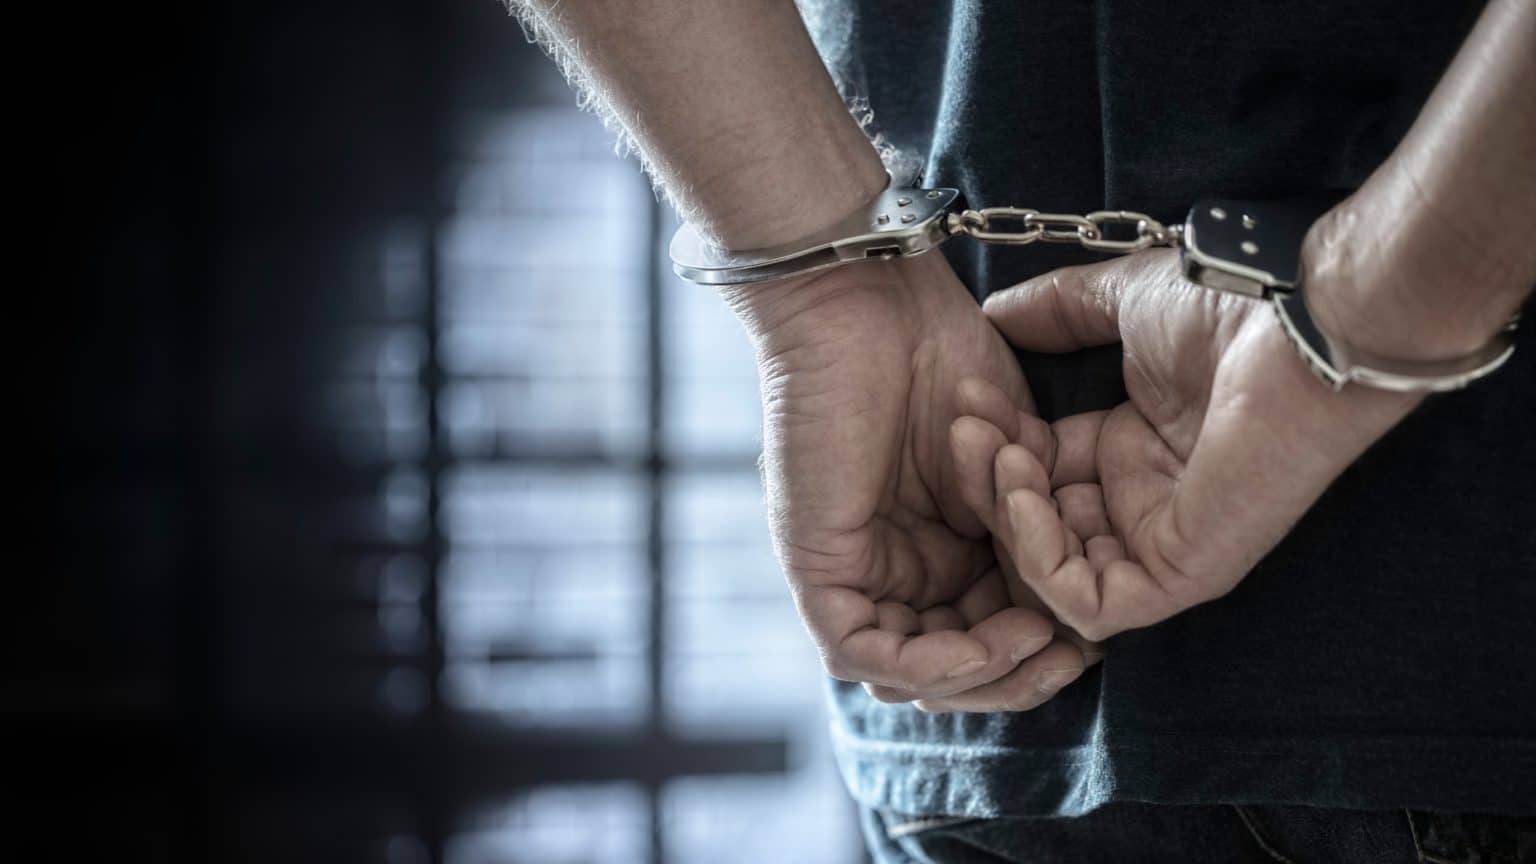 Noćna policijska potjera u Zadru završila uhićenjem 32-godišnjaka